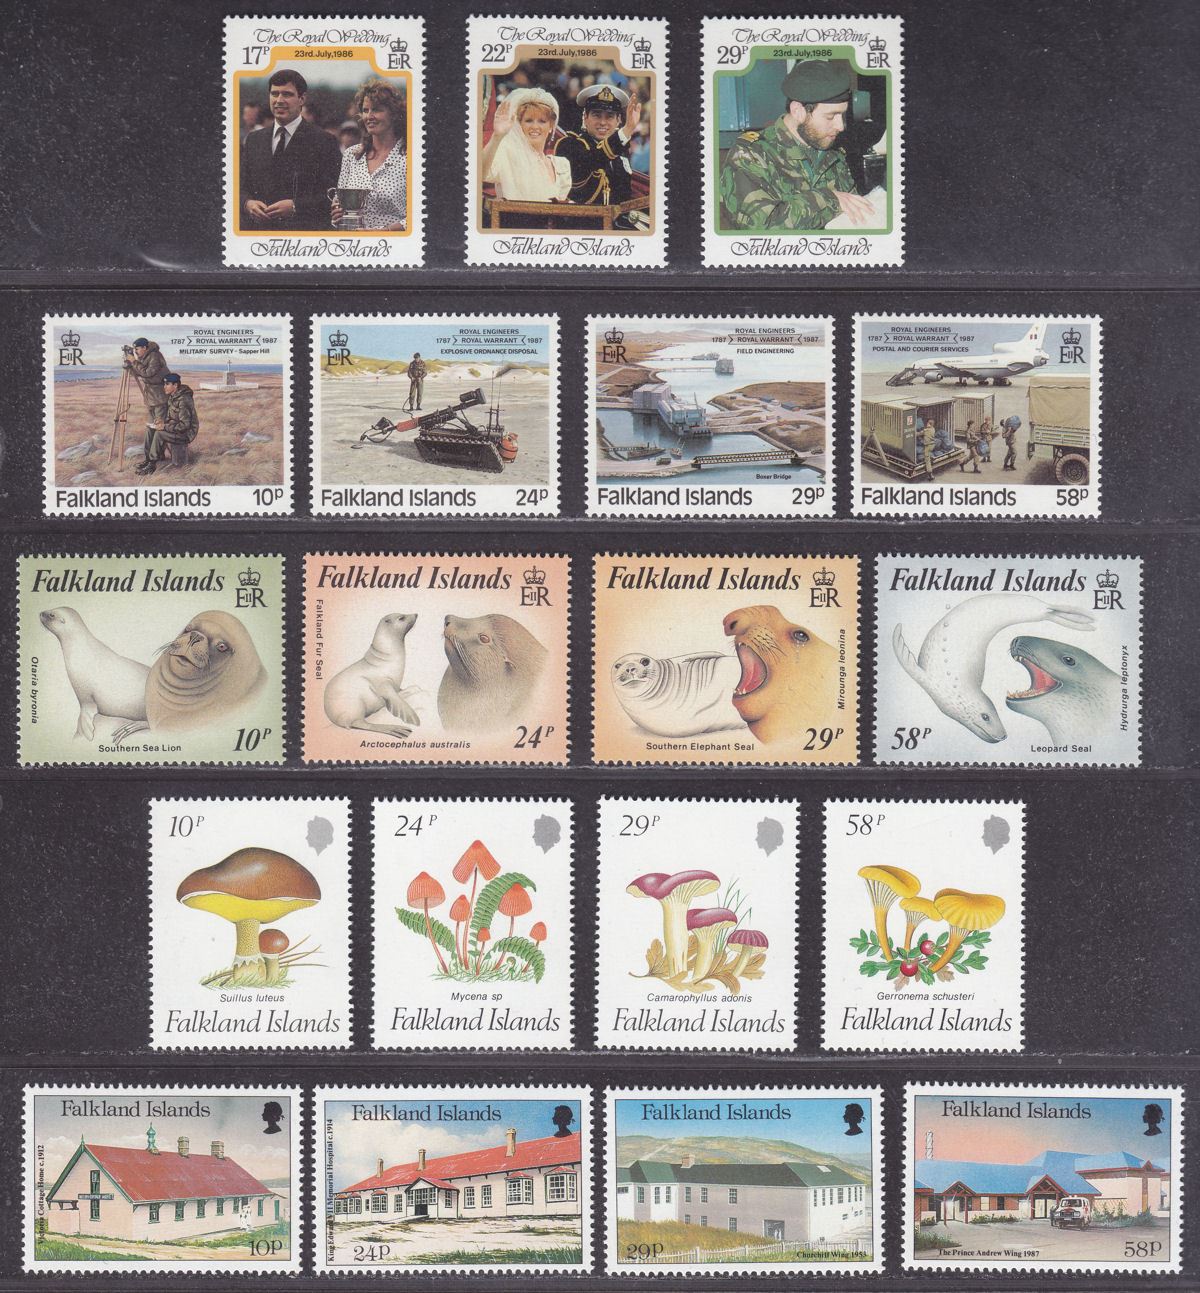 Falkland Islands 1986-87 QEII Selection Mint Seashells, Penguins, Seals, Fungi